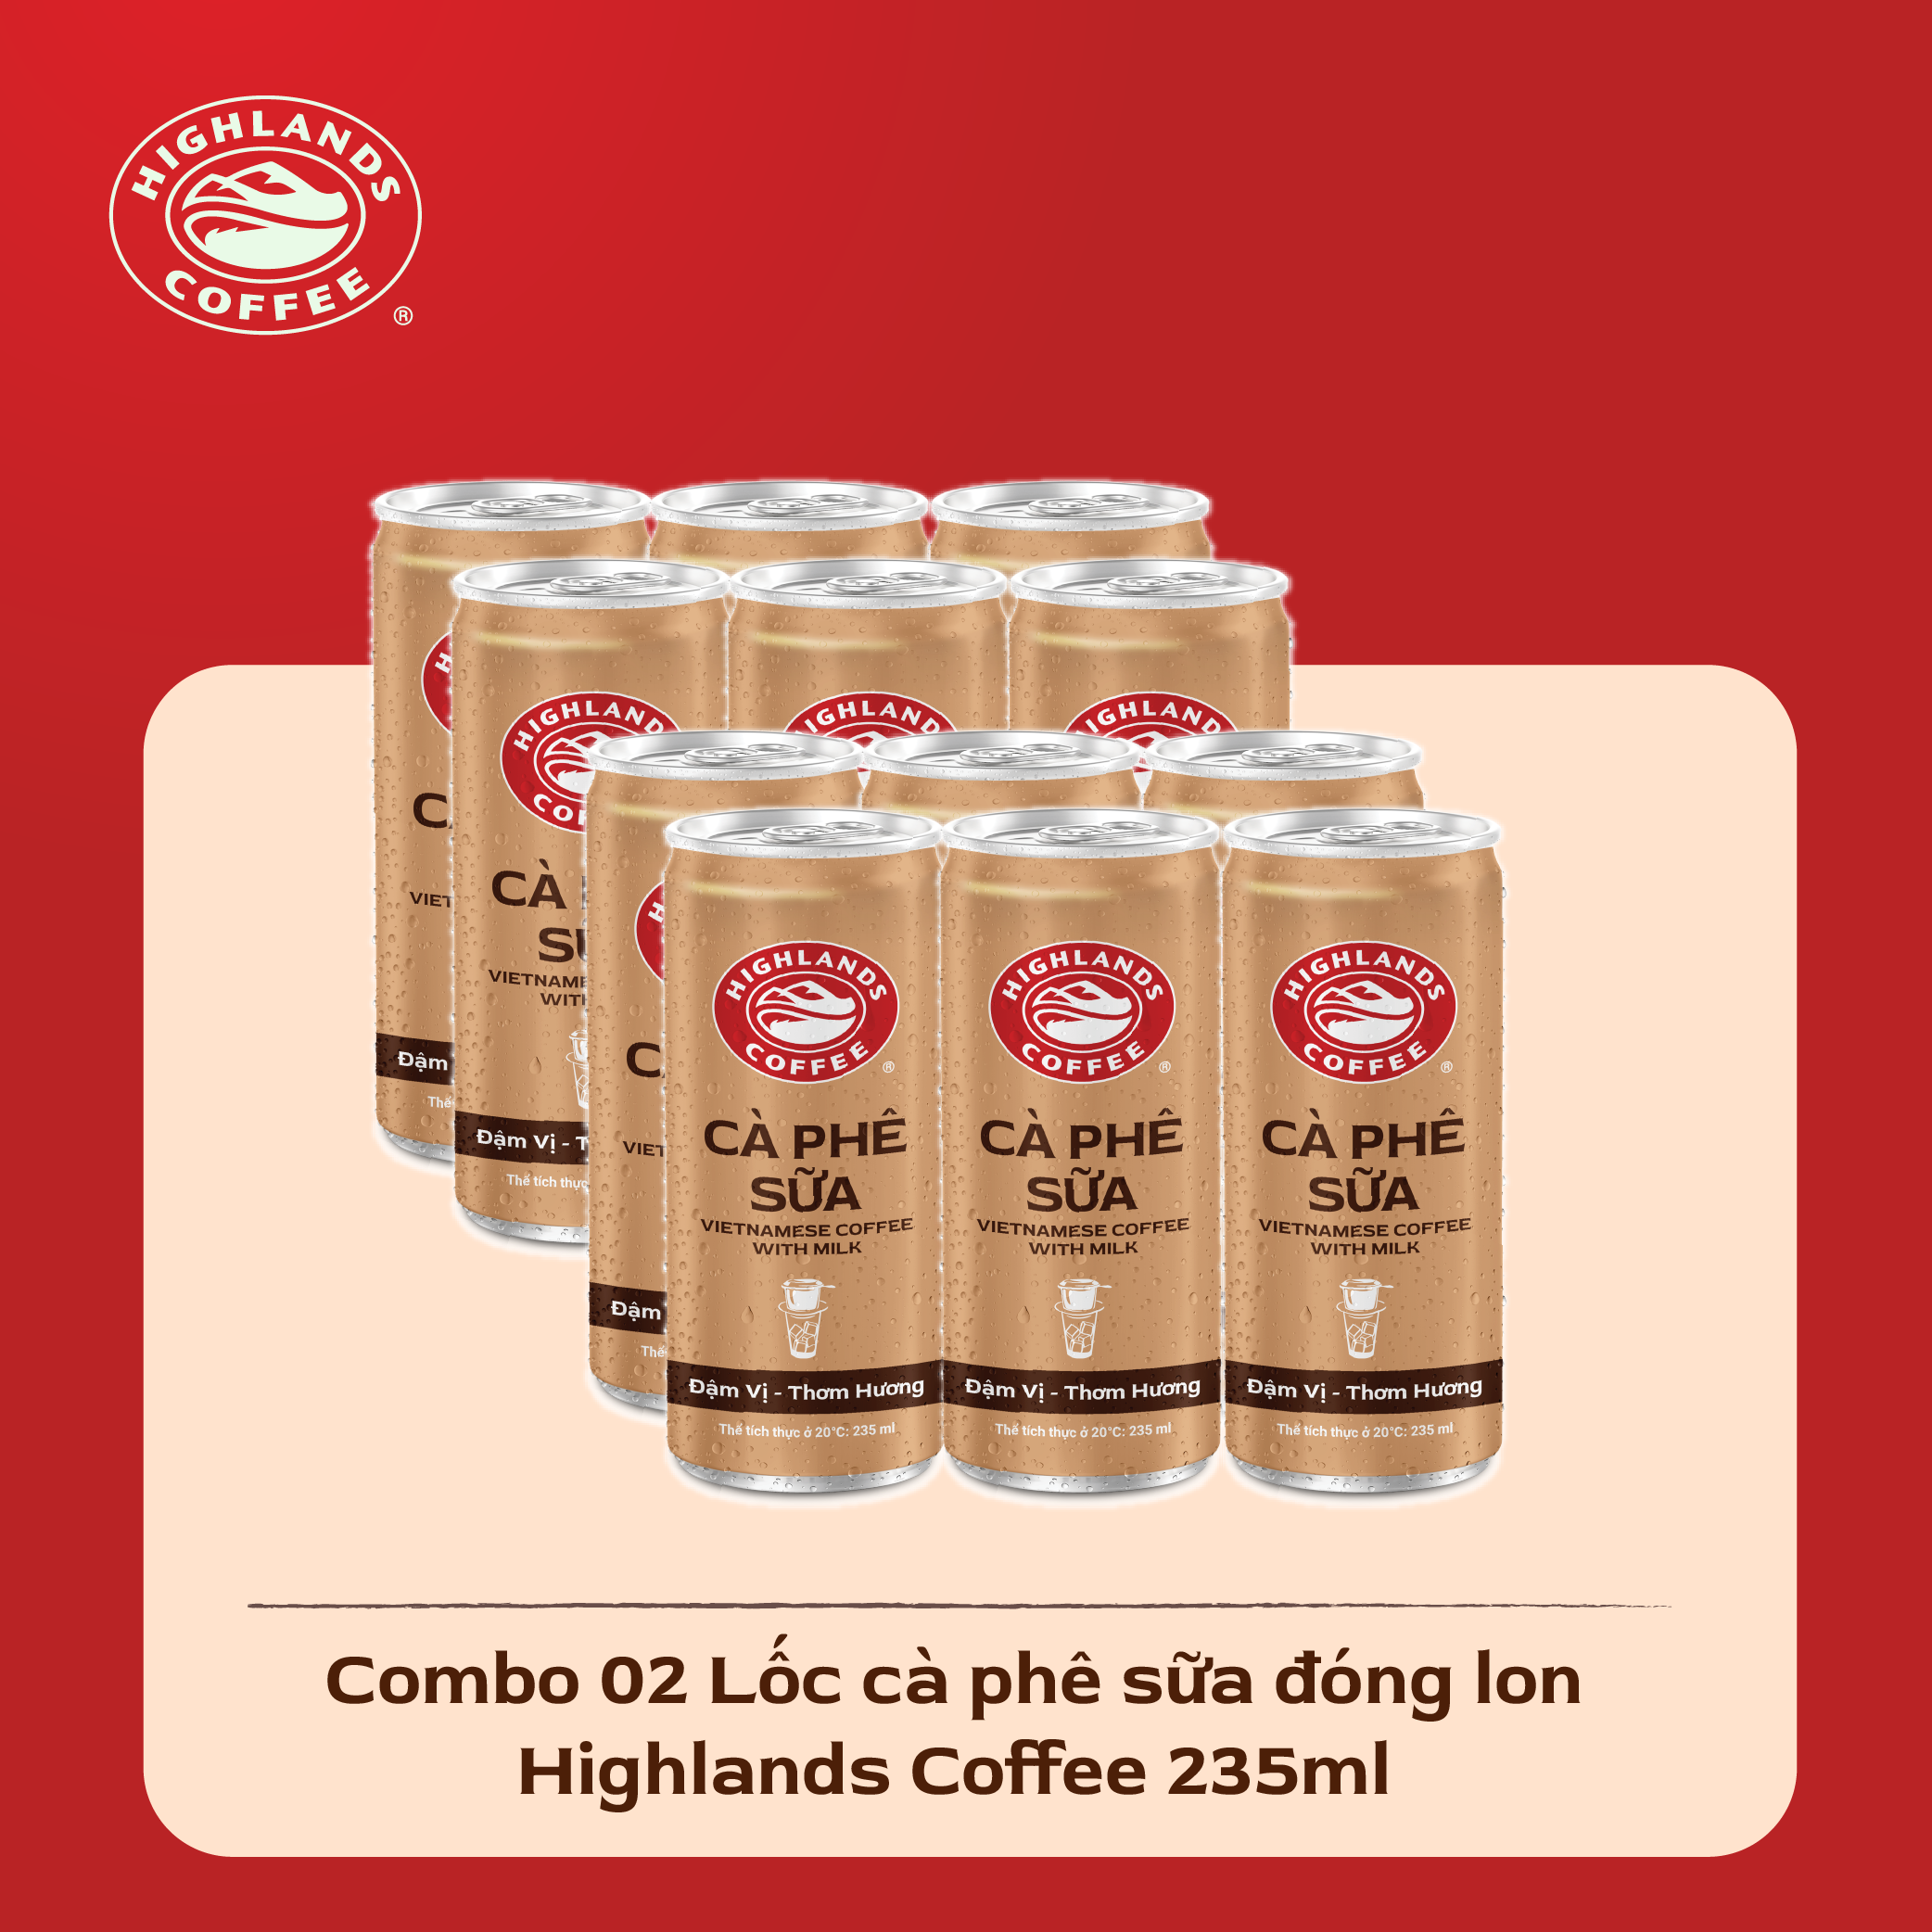 Combo 2 Lốc 6 Lon Cà Phê Sữa Highlands Coffee (235ml/Lon) 